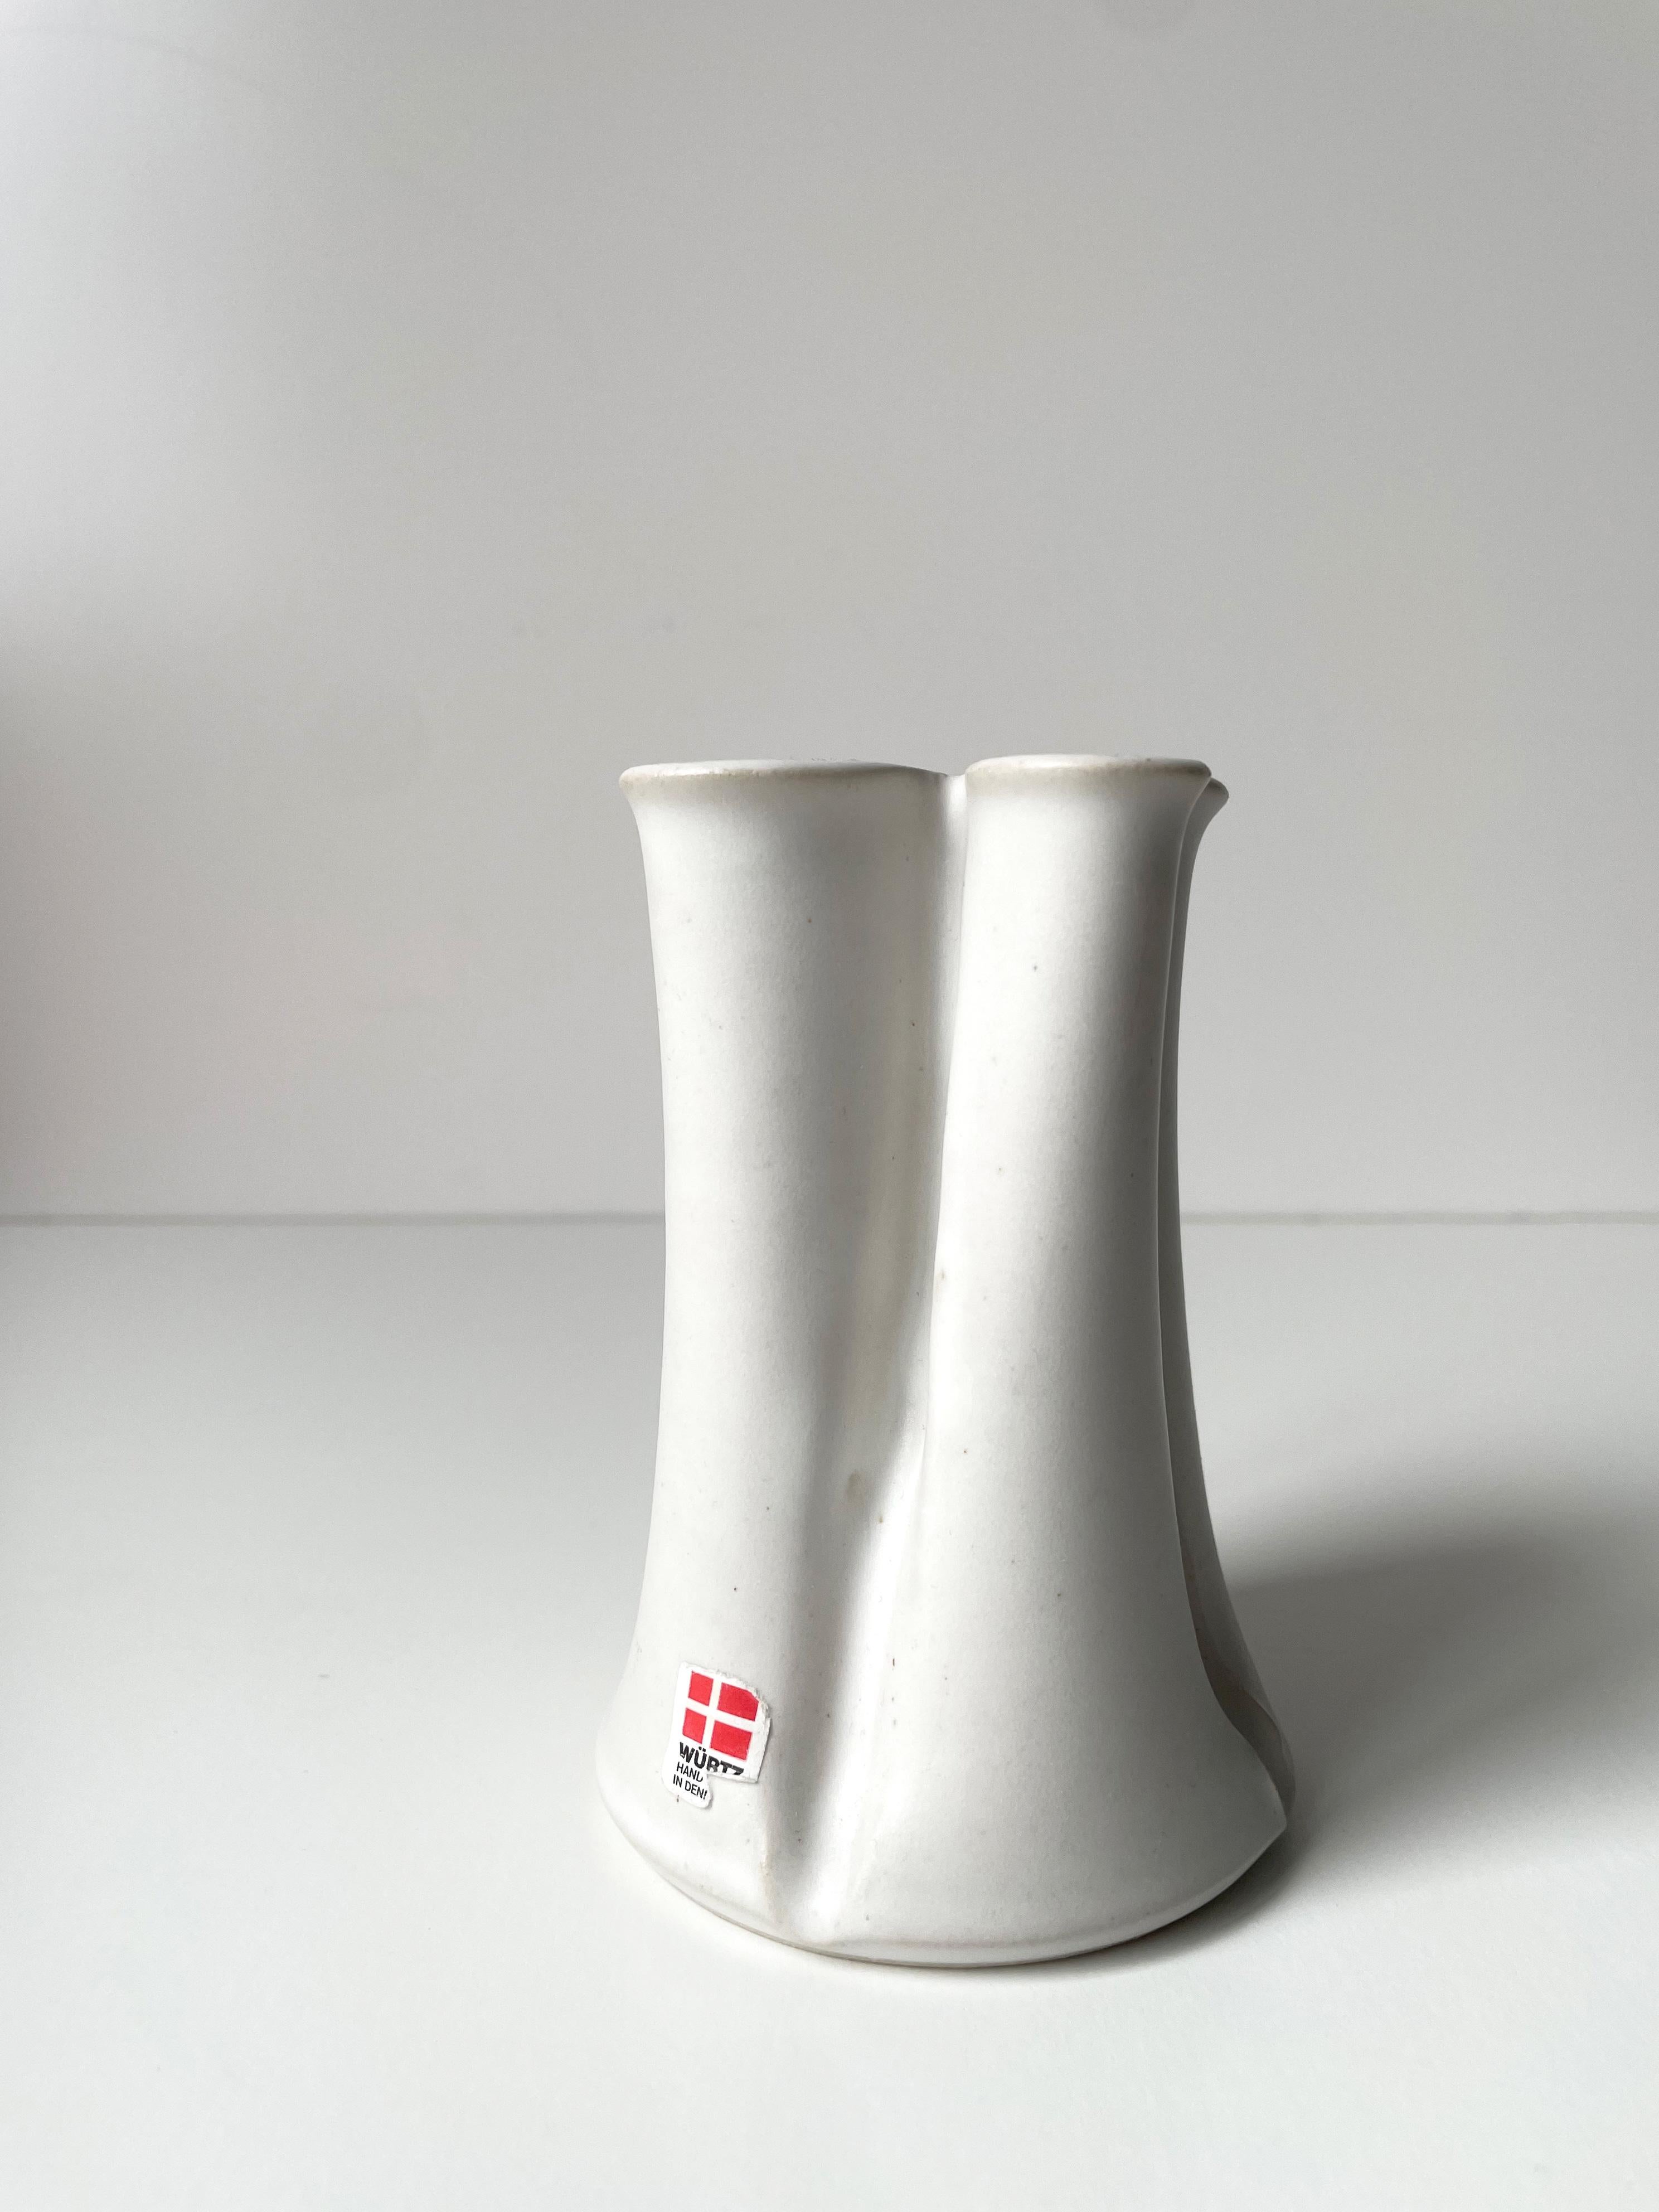 Set of Two Danish Organic Modern Ceramic Vases, Würtz, 1980s For Sale 1